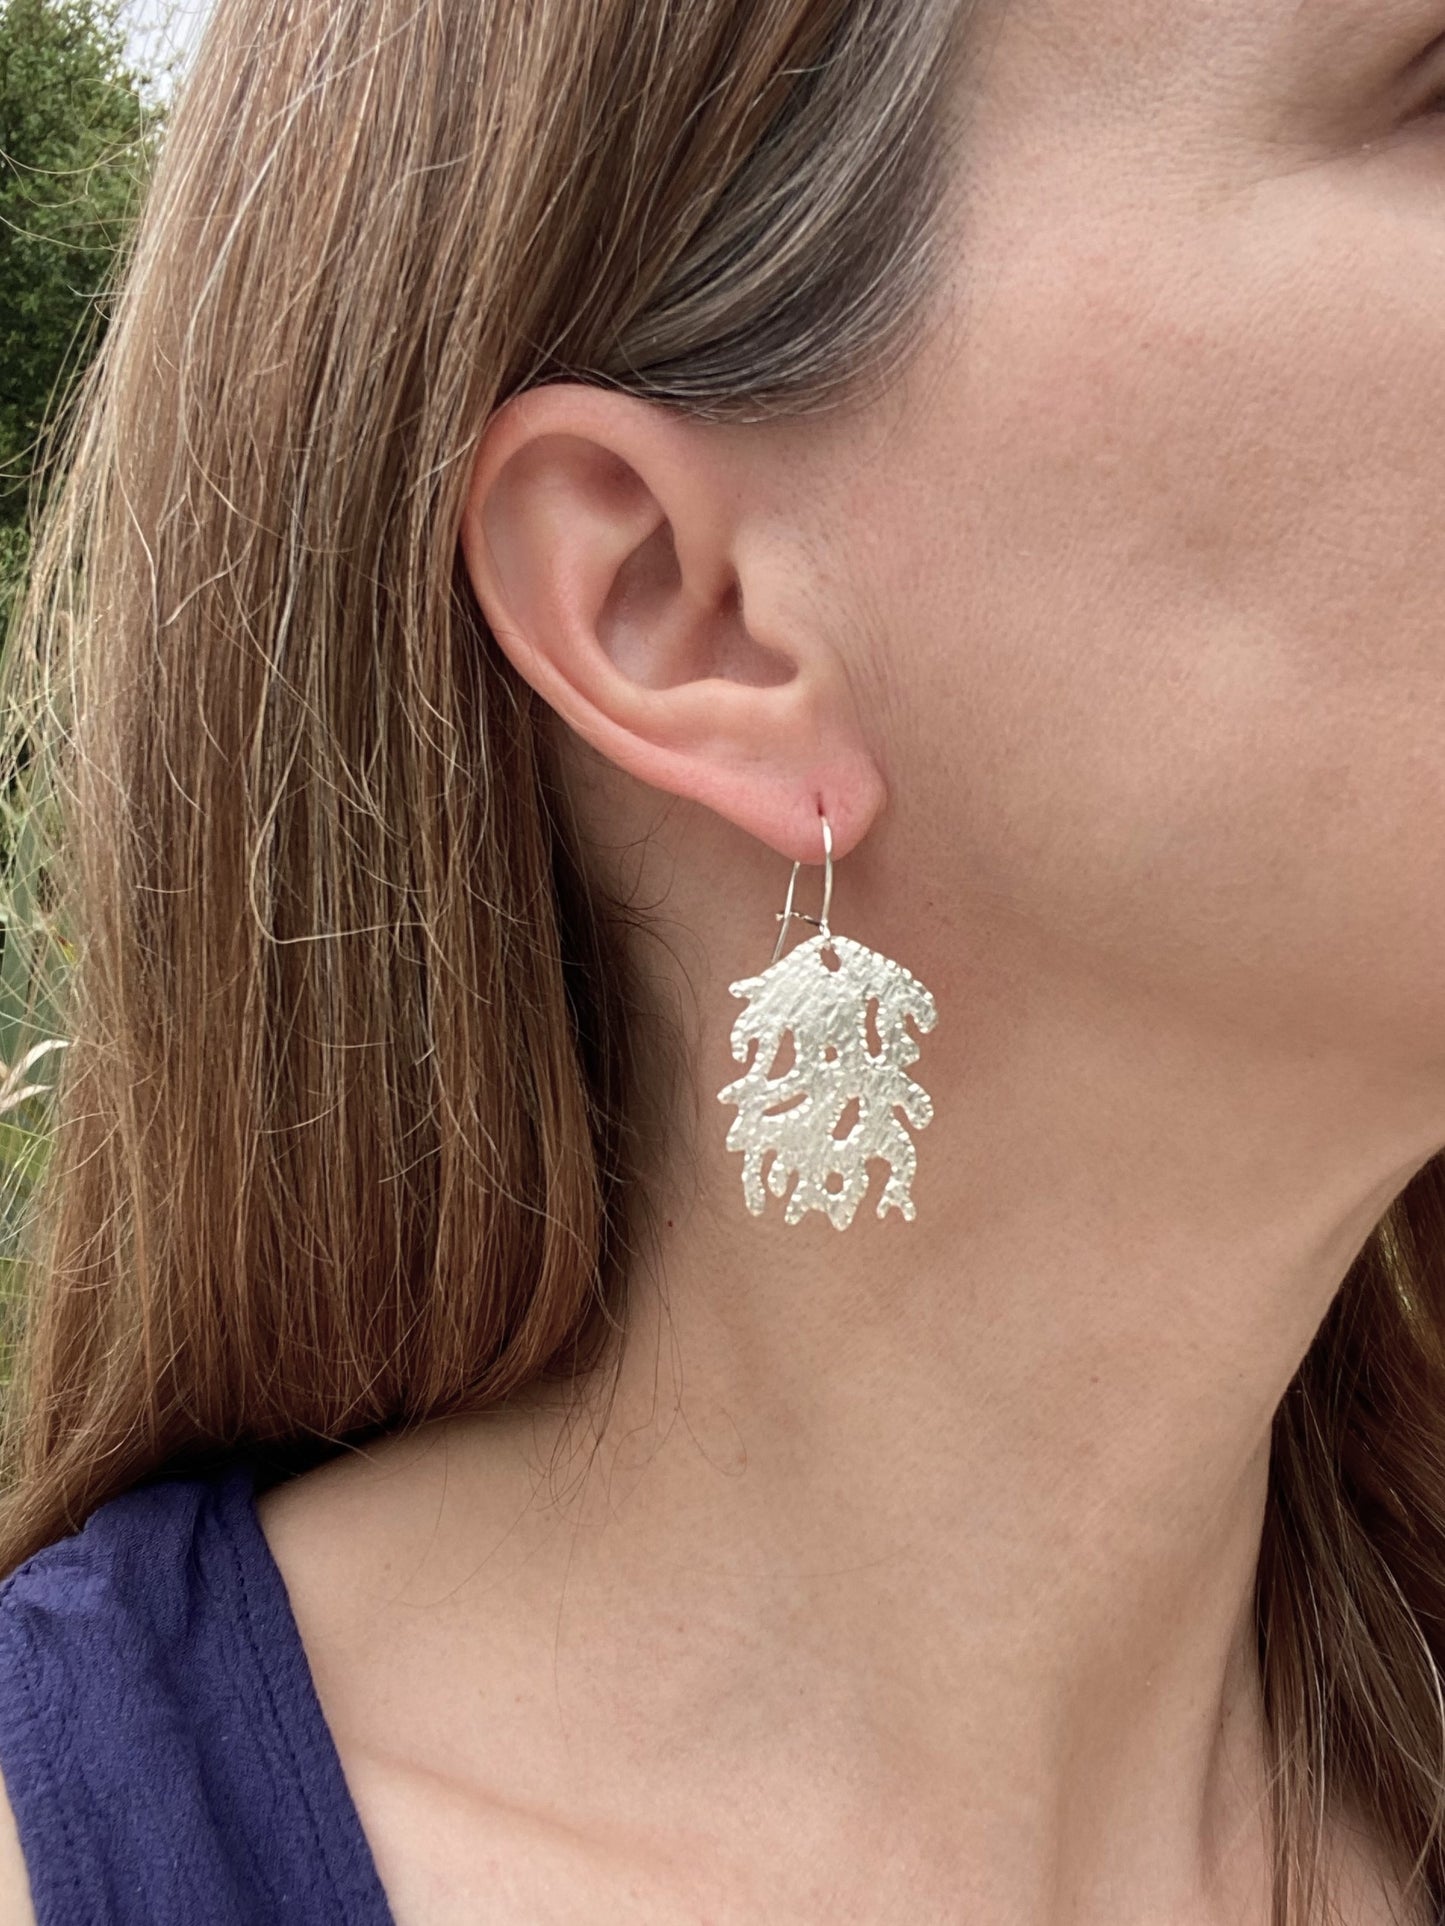 Coral Drift Hand-Pierced Sterling Silver Earrings